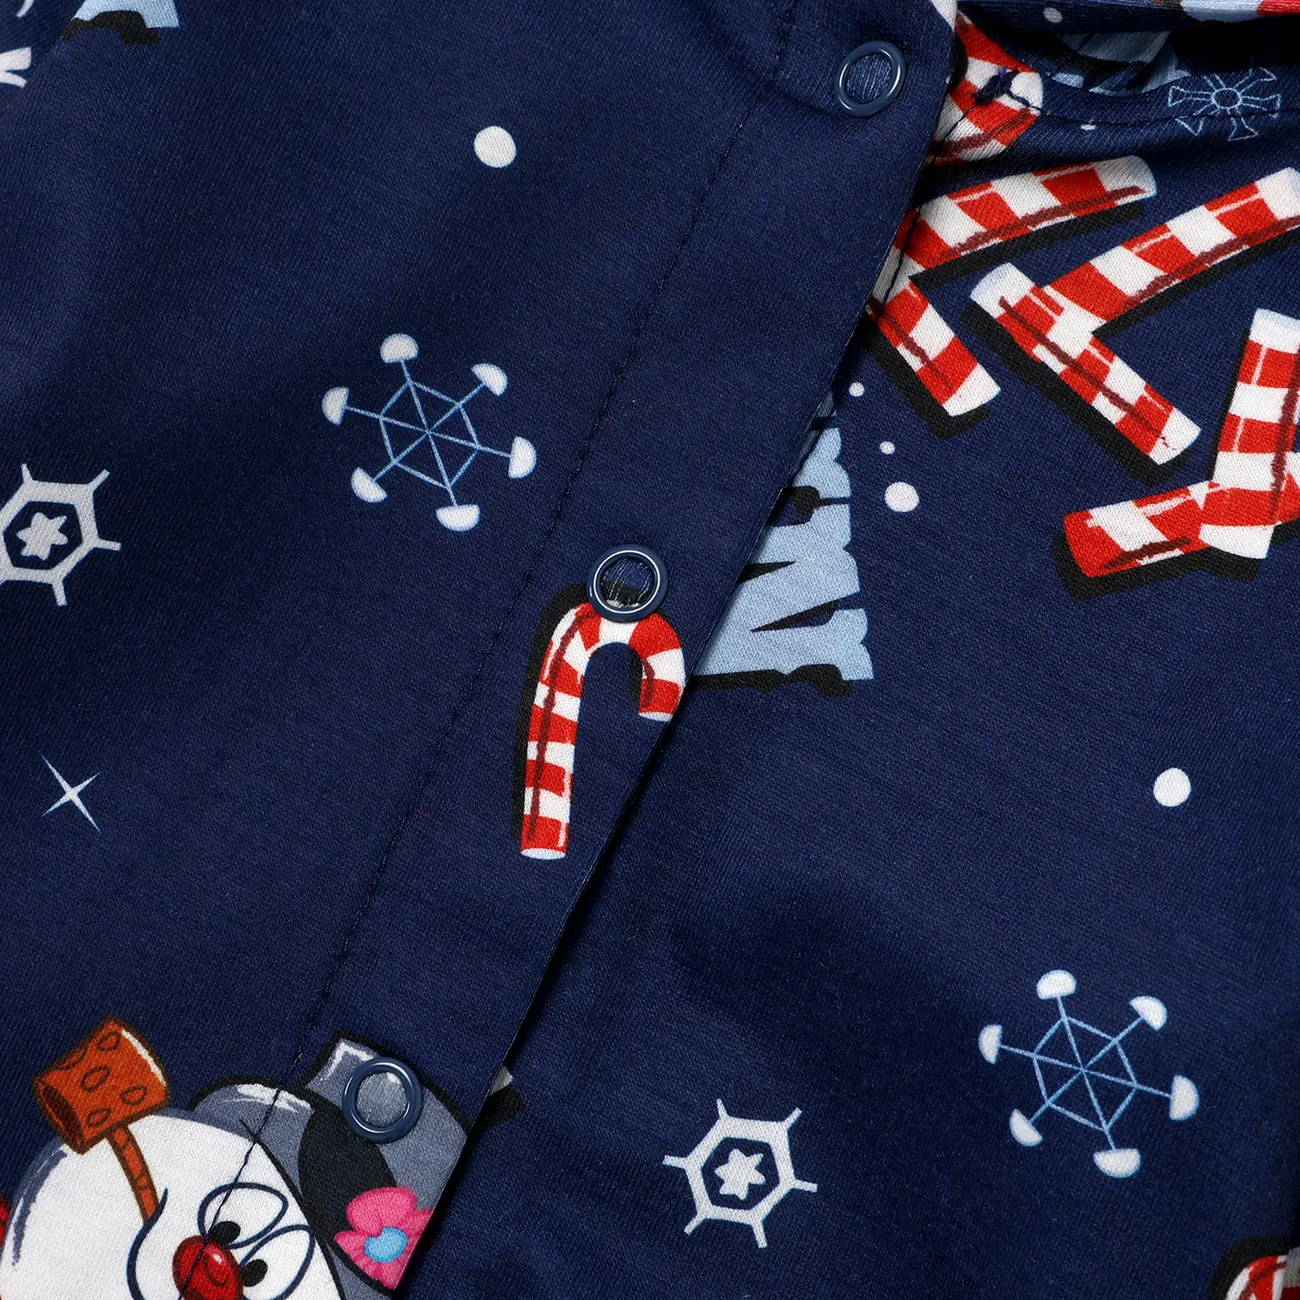 Frosty The Snowman Noël Look Familial Manches longues Tenues de famille assorties Pyjamas (Flame Resistant) Bleu Foncé big image 1